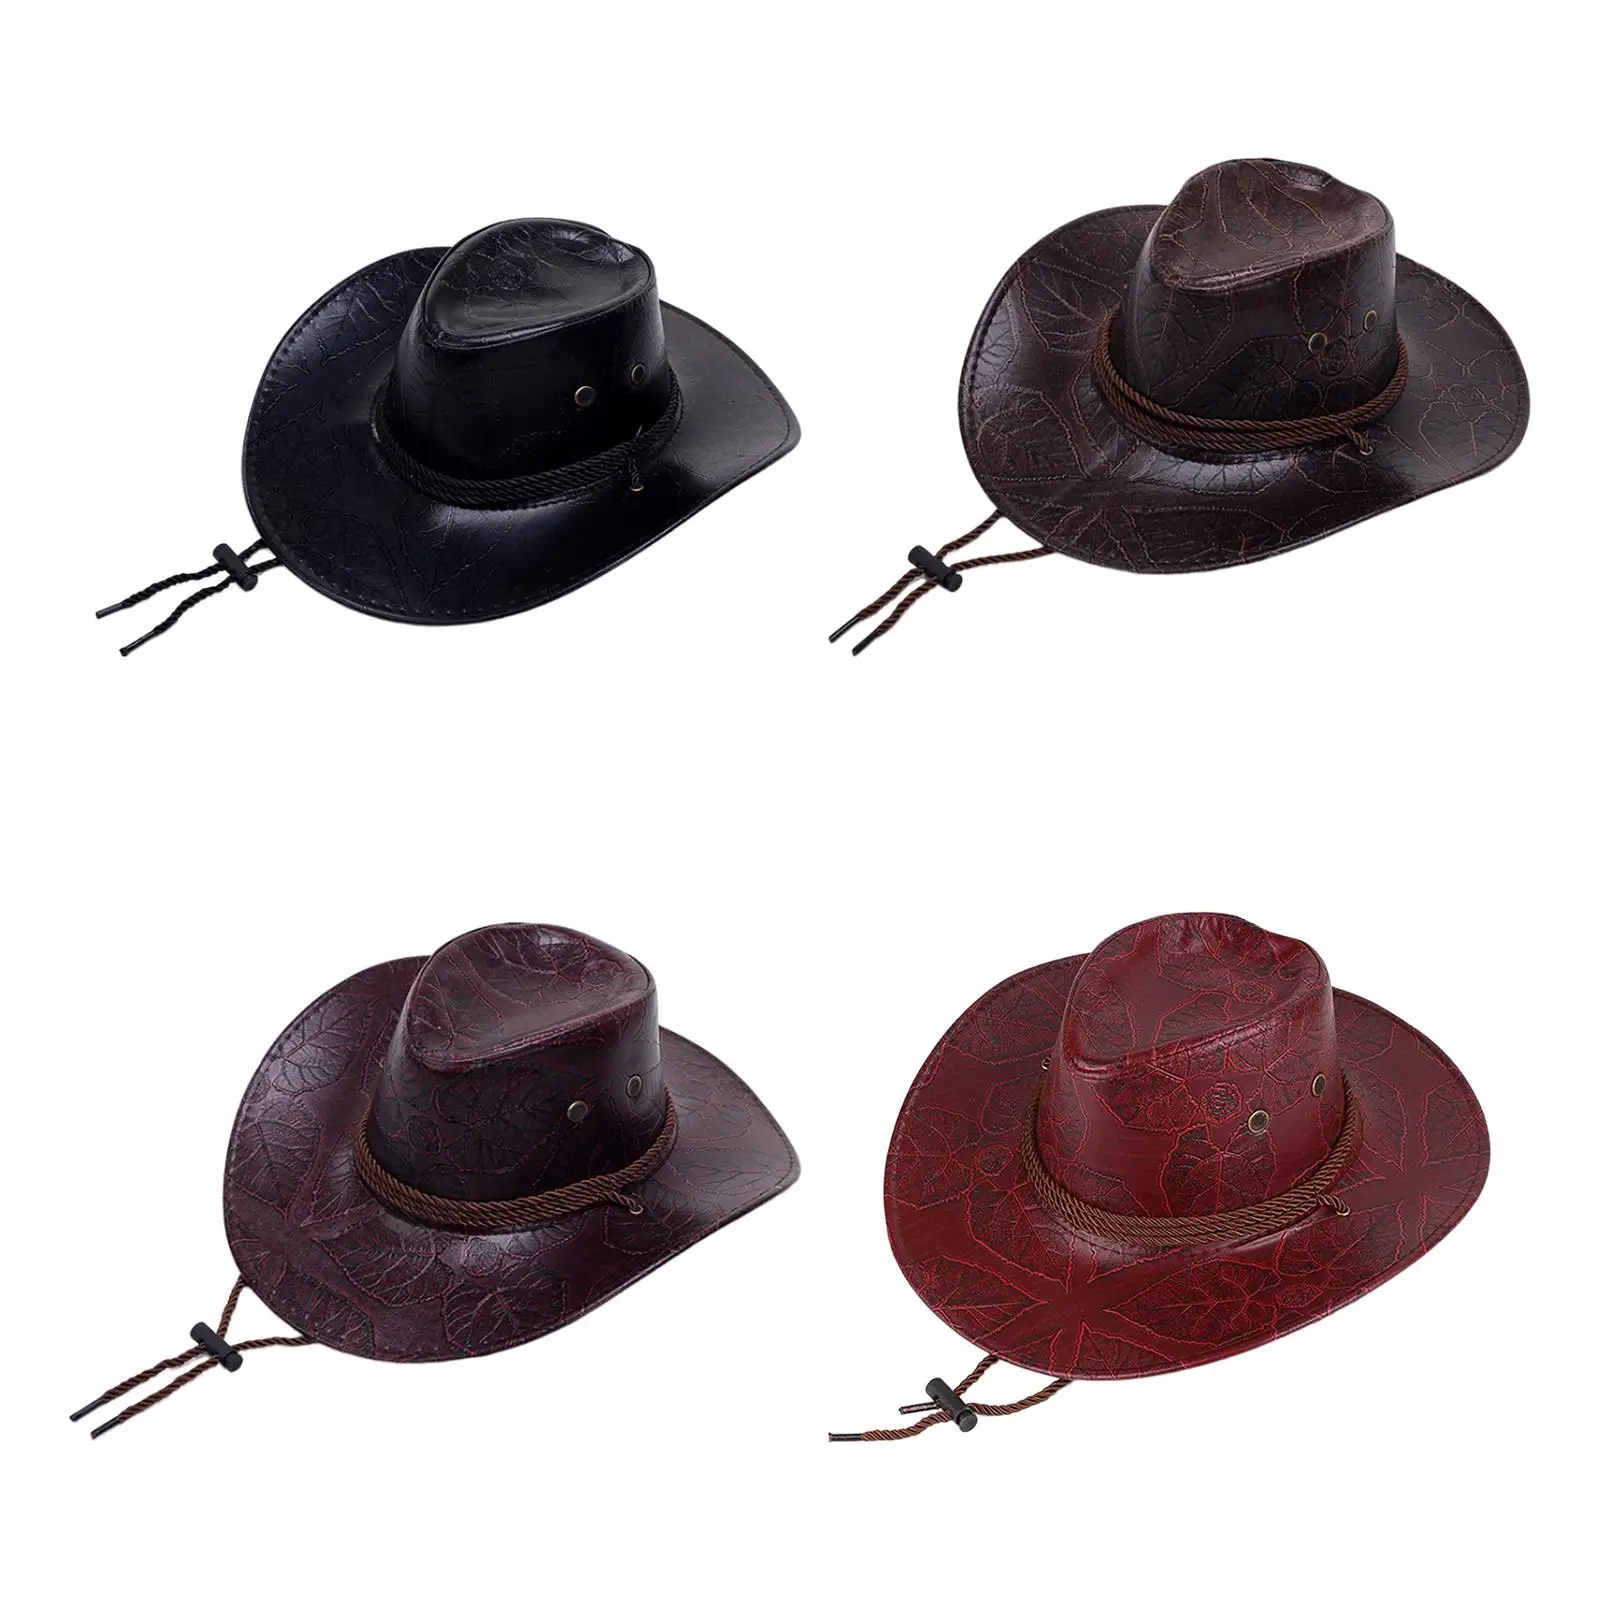 

Ковбойская шляпа в западном стиле, шляпа с широкими полями от солнца, аксессуары для костюма, кепки из искусственной кожи для джазовых представлений и праздников в стиле унисекс